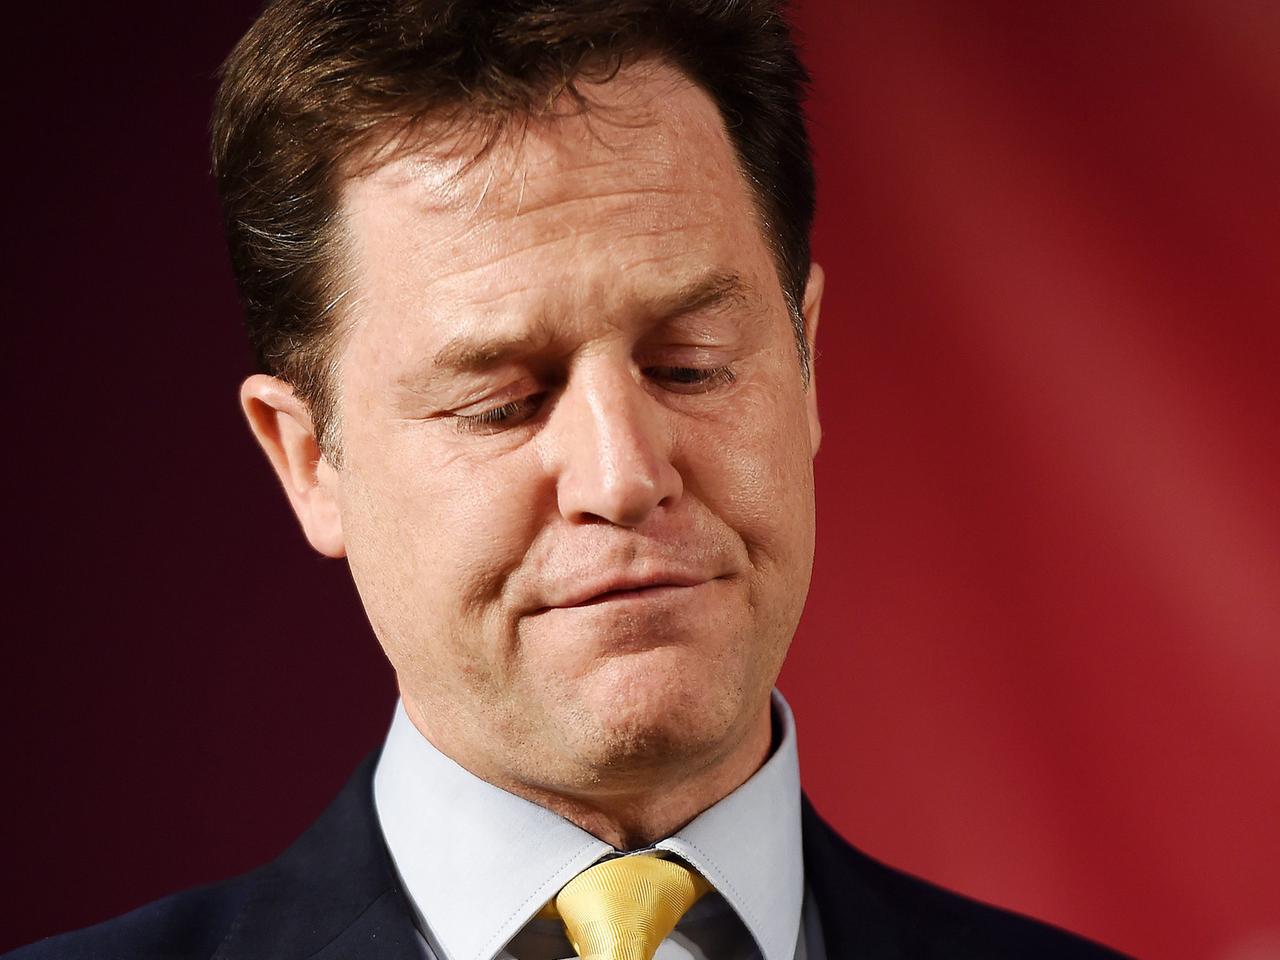 Nick Clegg, britischer Vizeregierungschef bei einer Veranstaltung im Vorfeld der Unterhauswahlen.